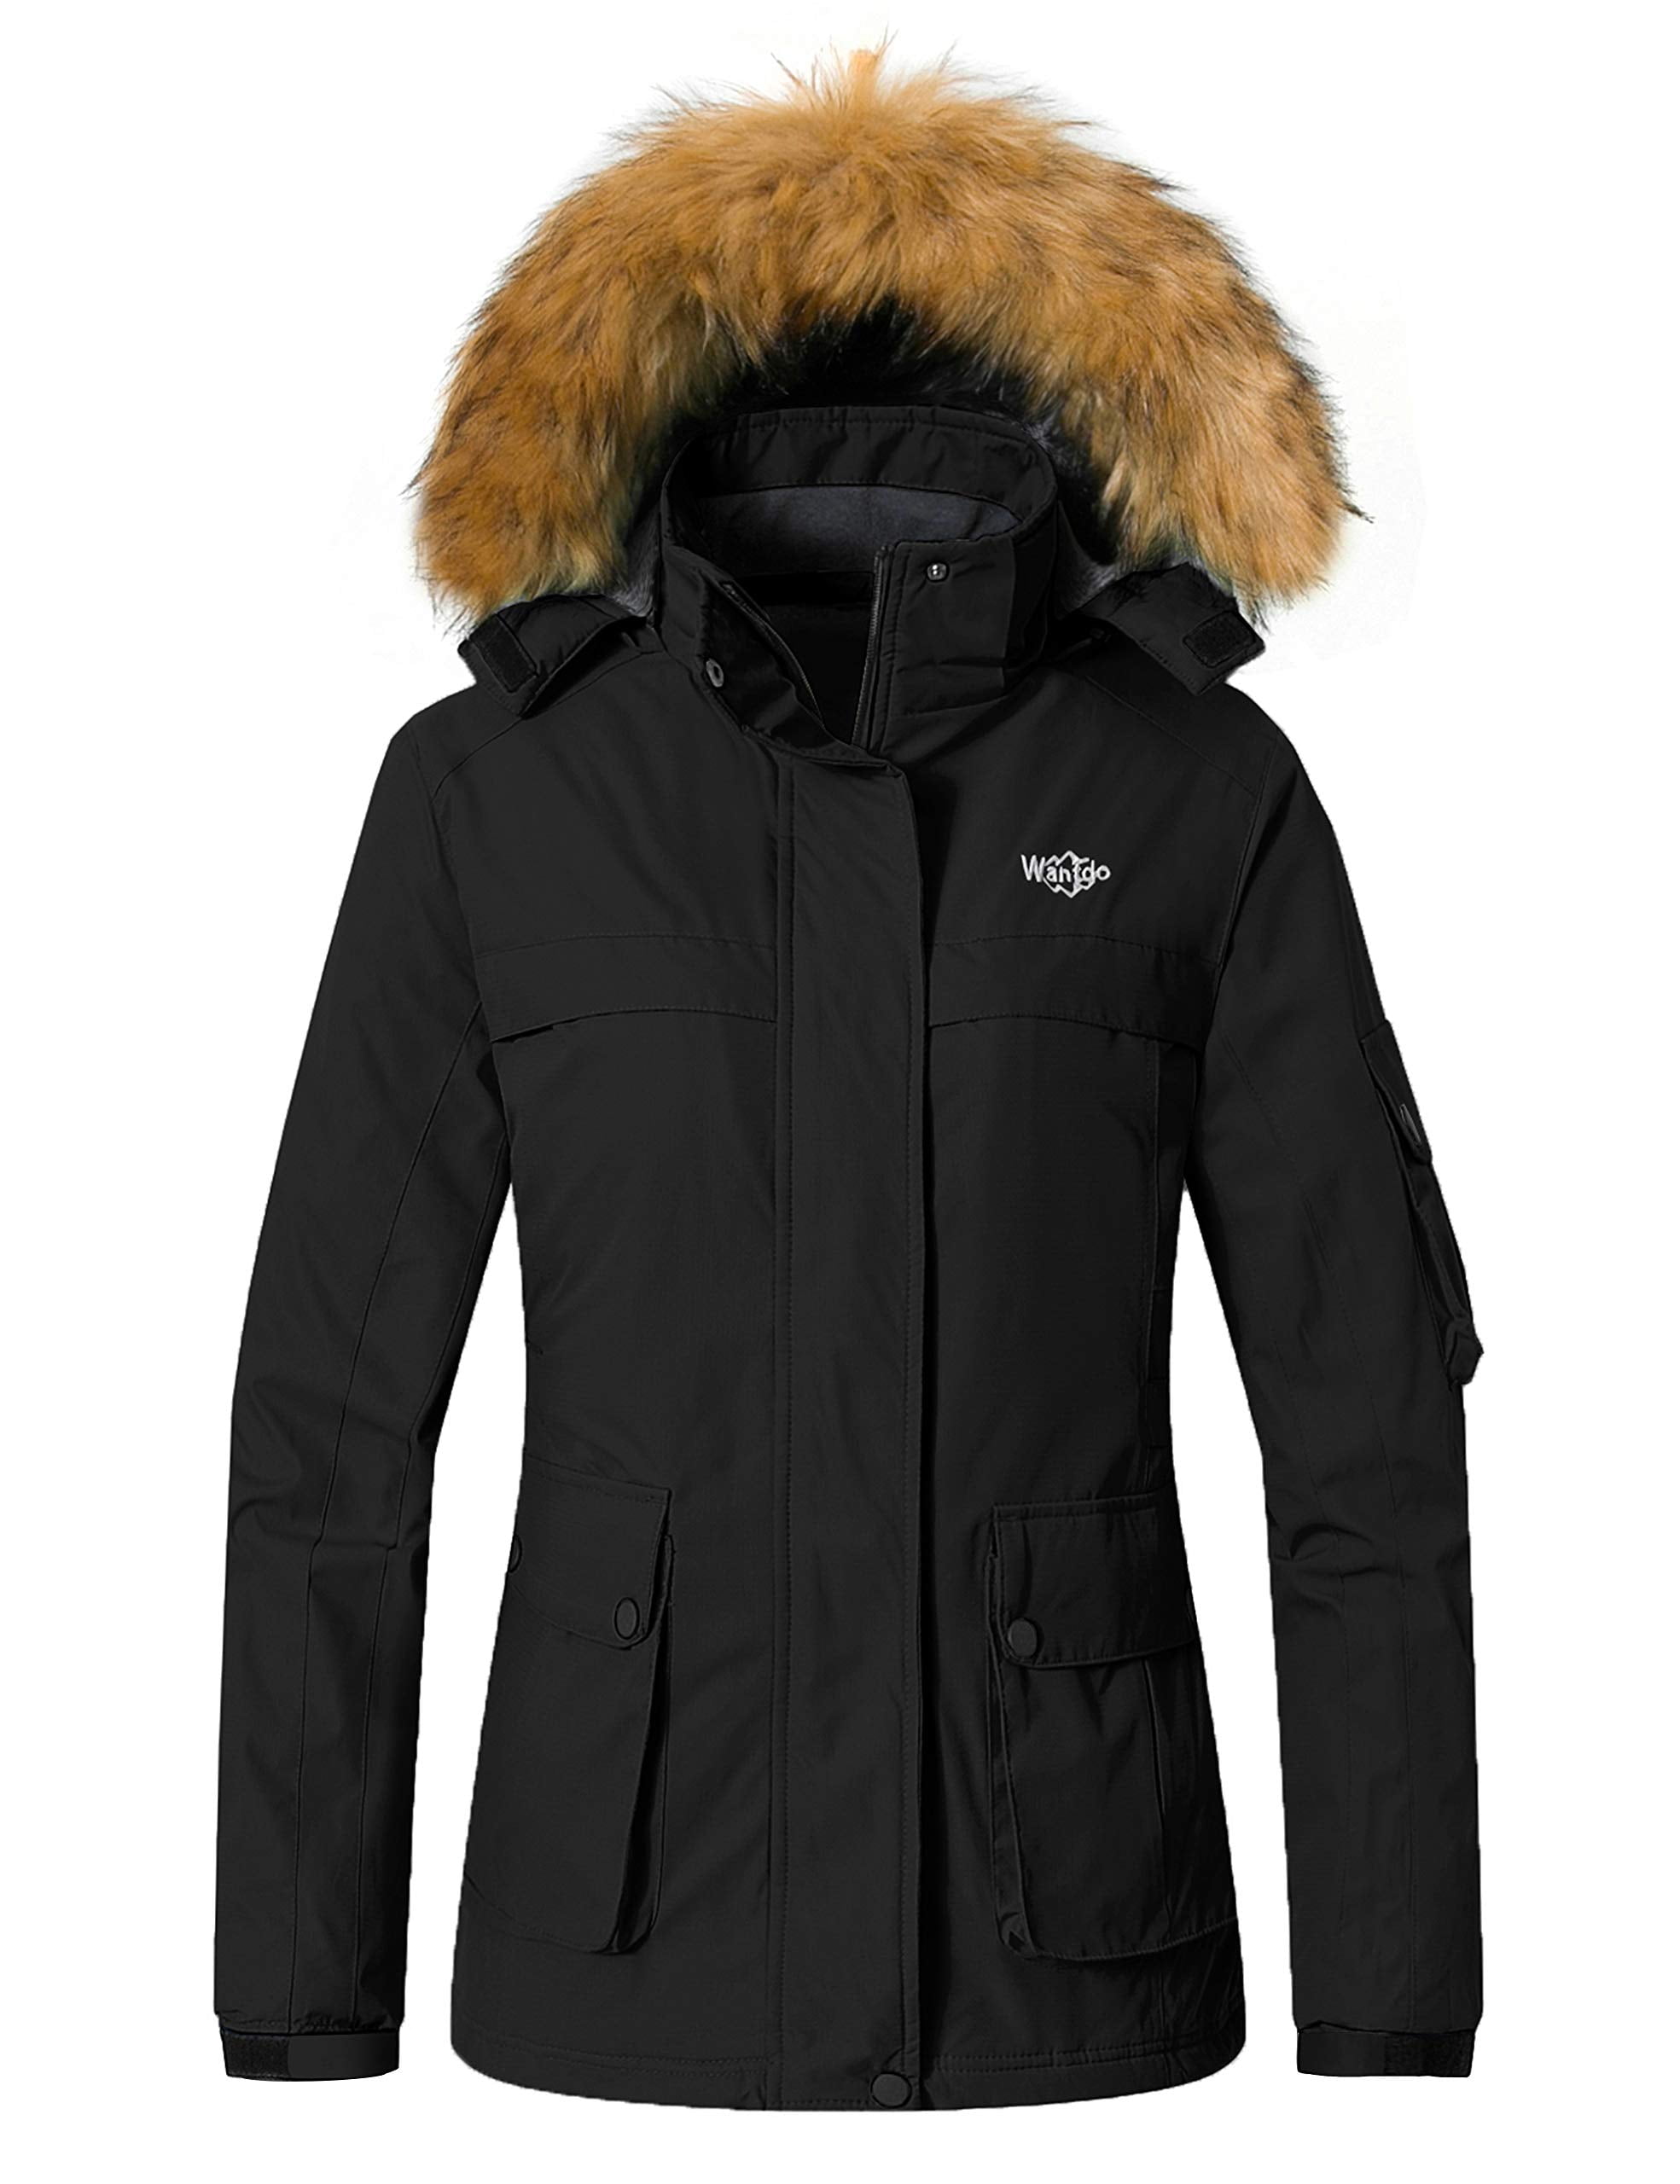 Wantdo Womens Waterproof Ski Jacket Hooded Snow Coat Mountain Fleece Winter Parka Snowboarding Jackets 